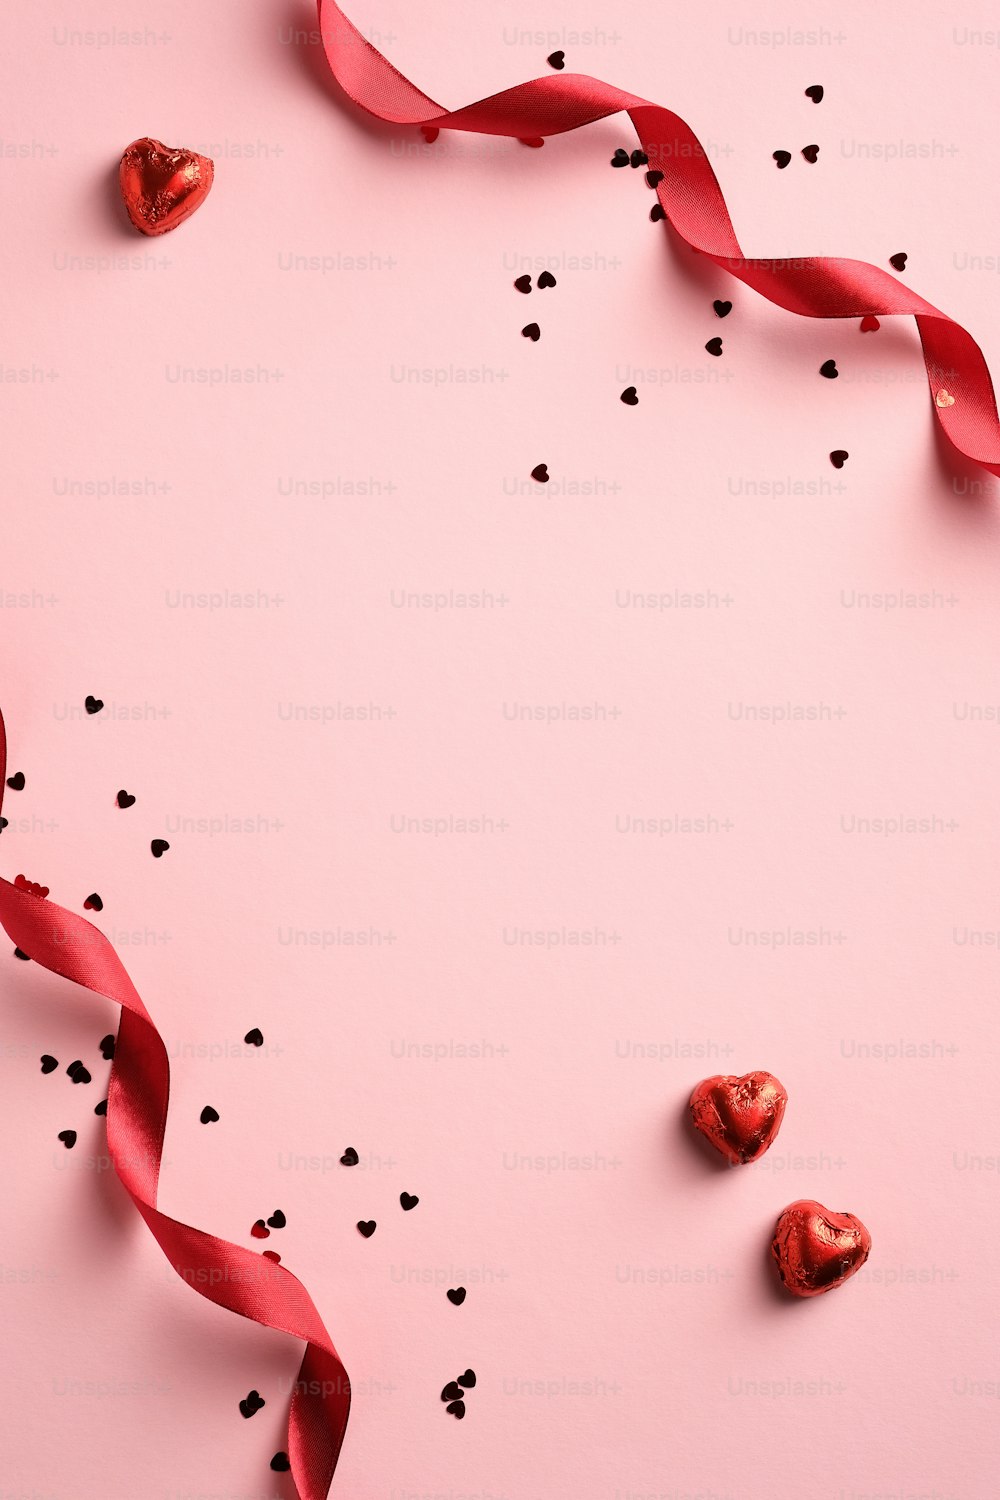 빨간 리본, 색종이, 분홍색 배경에 하트 모양의 과자가 있는 우아한 발렌타인 데이 배경. 최소한의 스타일. 플랫 레이.